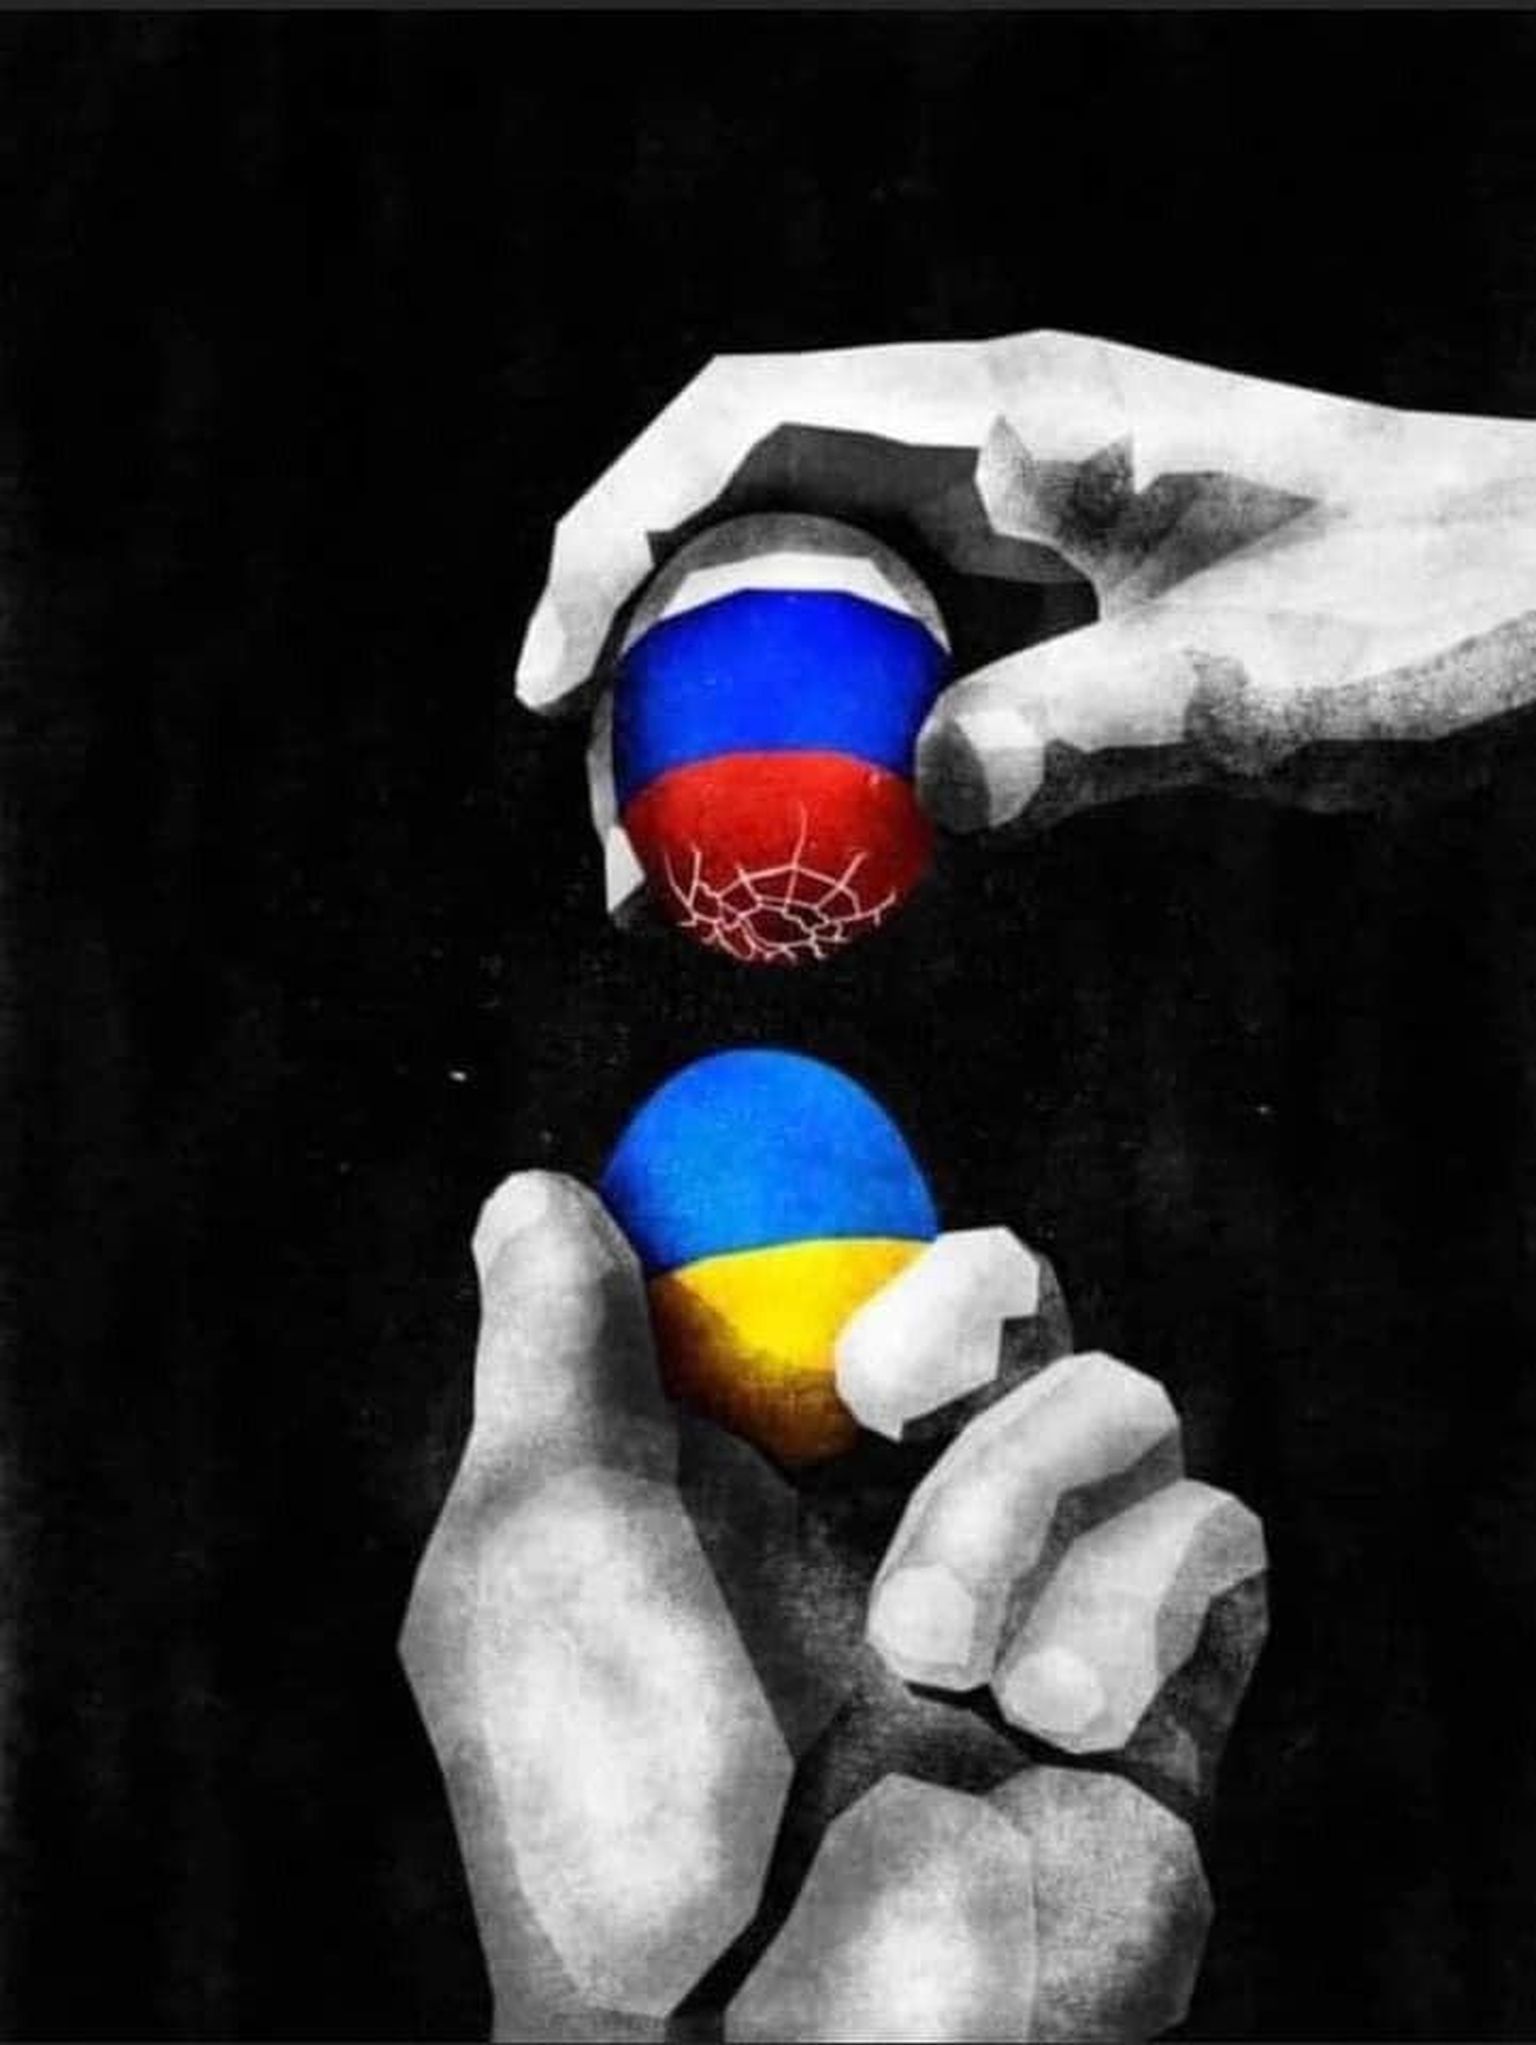 Venemaa ei arvestanud Ukraina lipu värvides muna koksides, et ka tema muna võib katki minna.